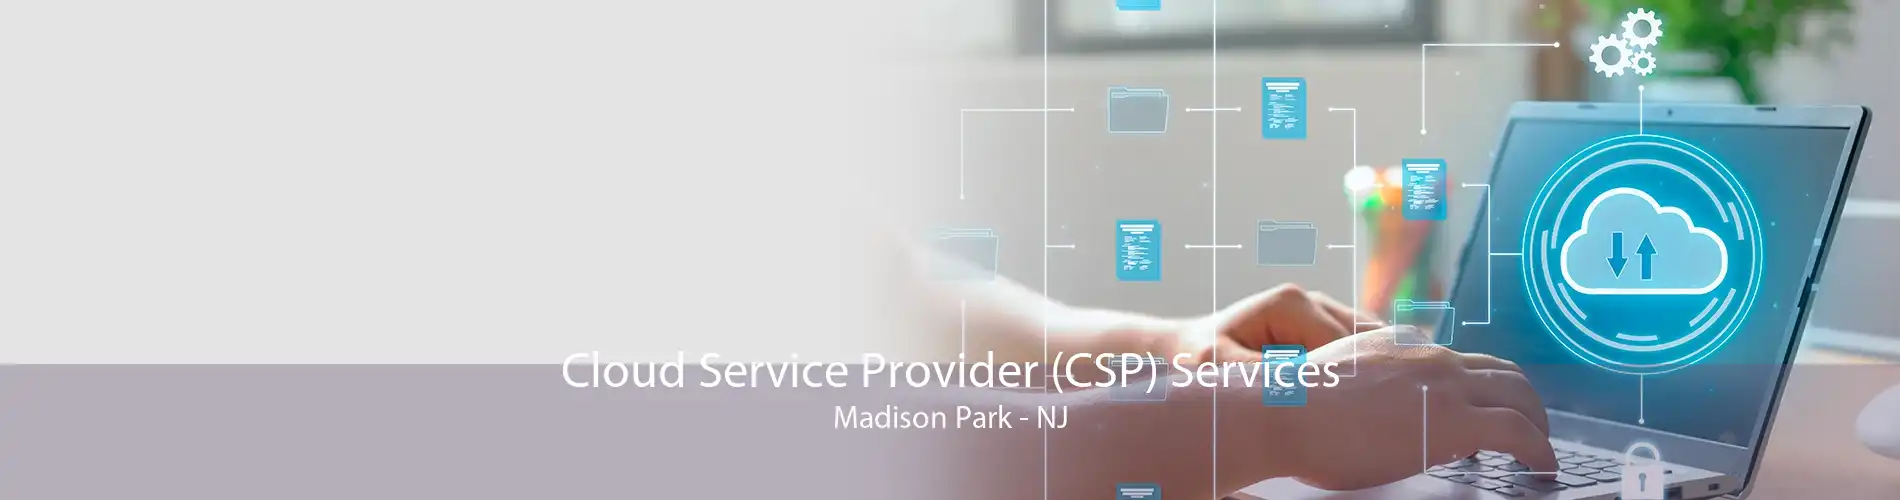 Cloud Service Provider (CSP) Services Madison Park - NJ